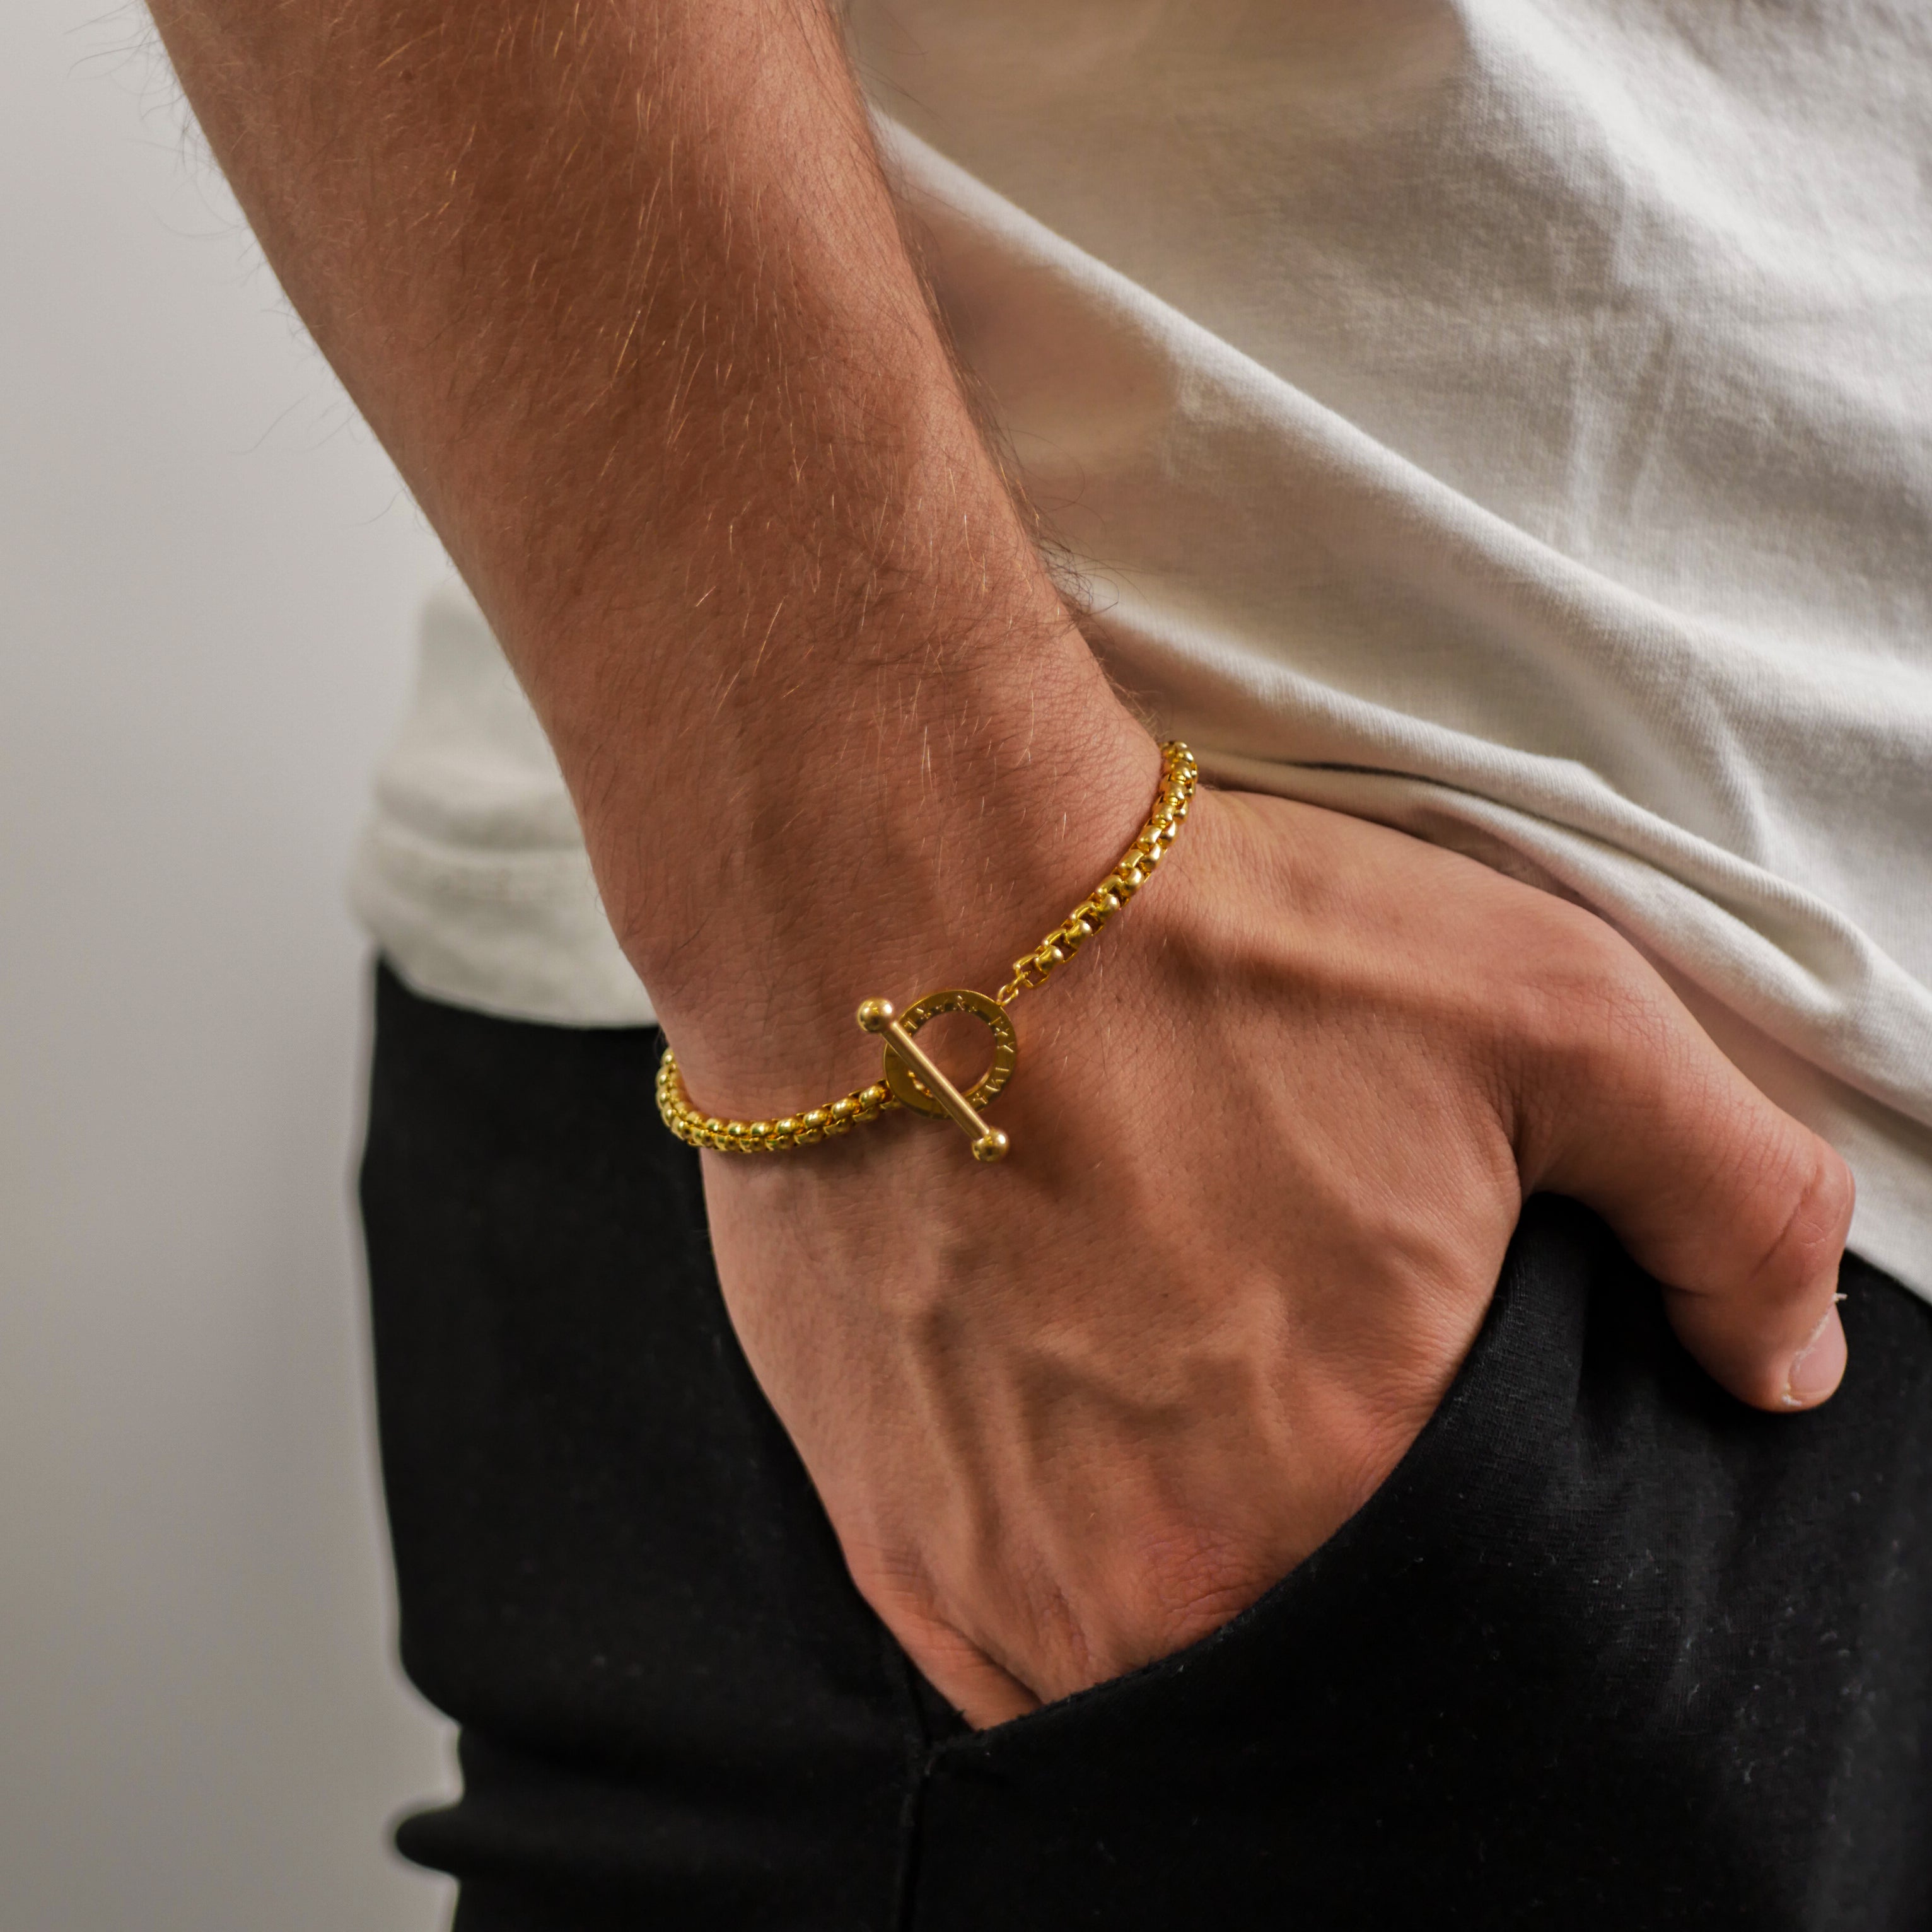 Ragnar bracelet - Gold-toned